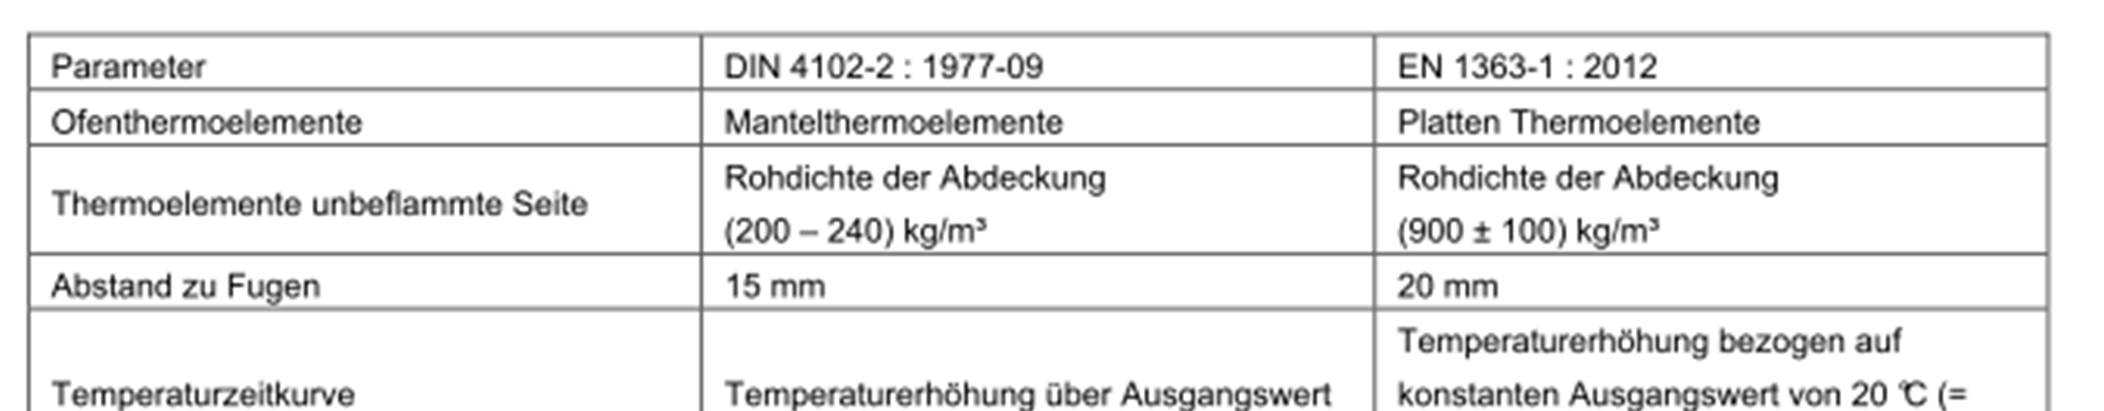 Vergleich Prüfparameter DIN 4102 - europ. Normung Nach DIN EN 13501 Ziffer 7.1.2.1 darf keine Prüfung zum Zweck der Wiederholbarkeit ein weiteres Mal durchgeführt werden!